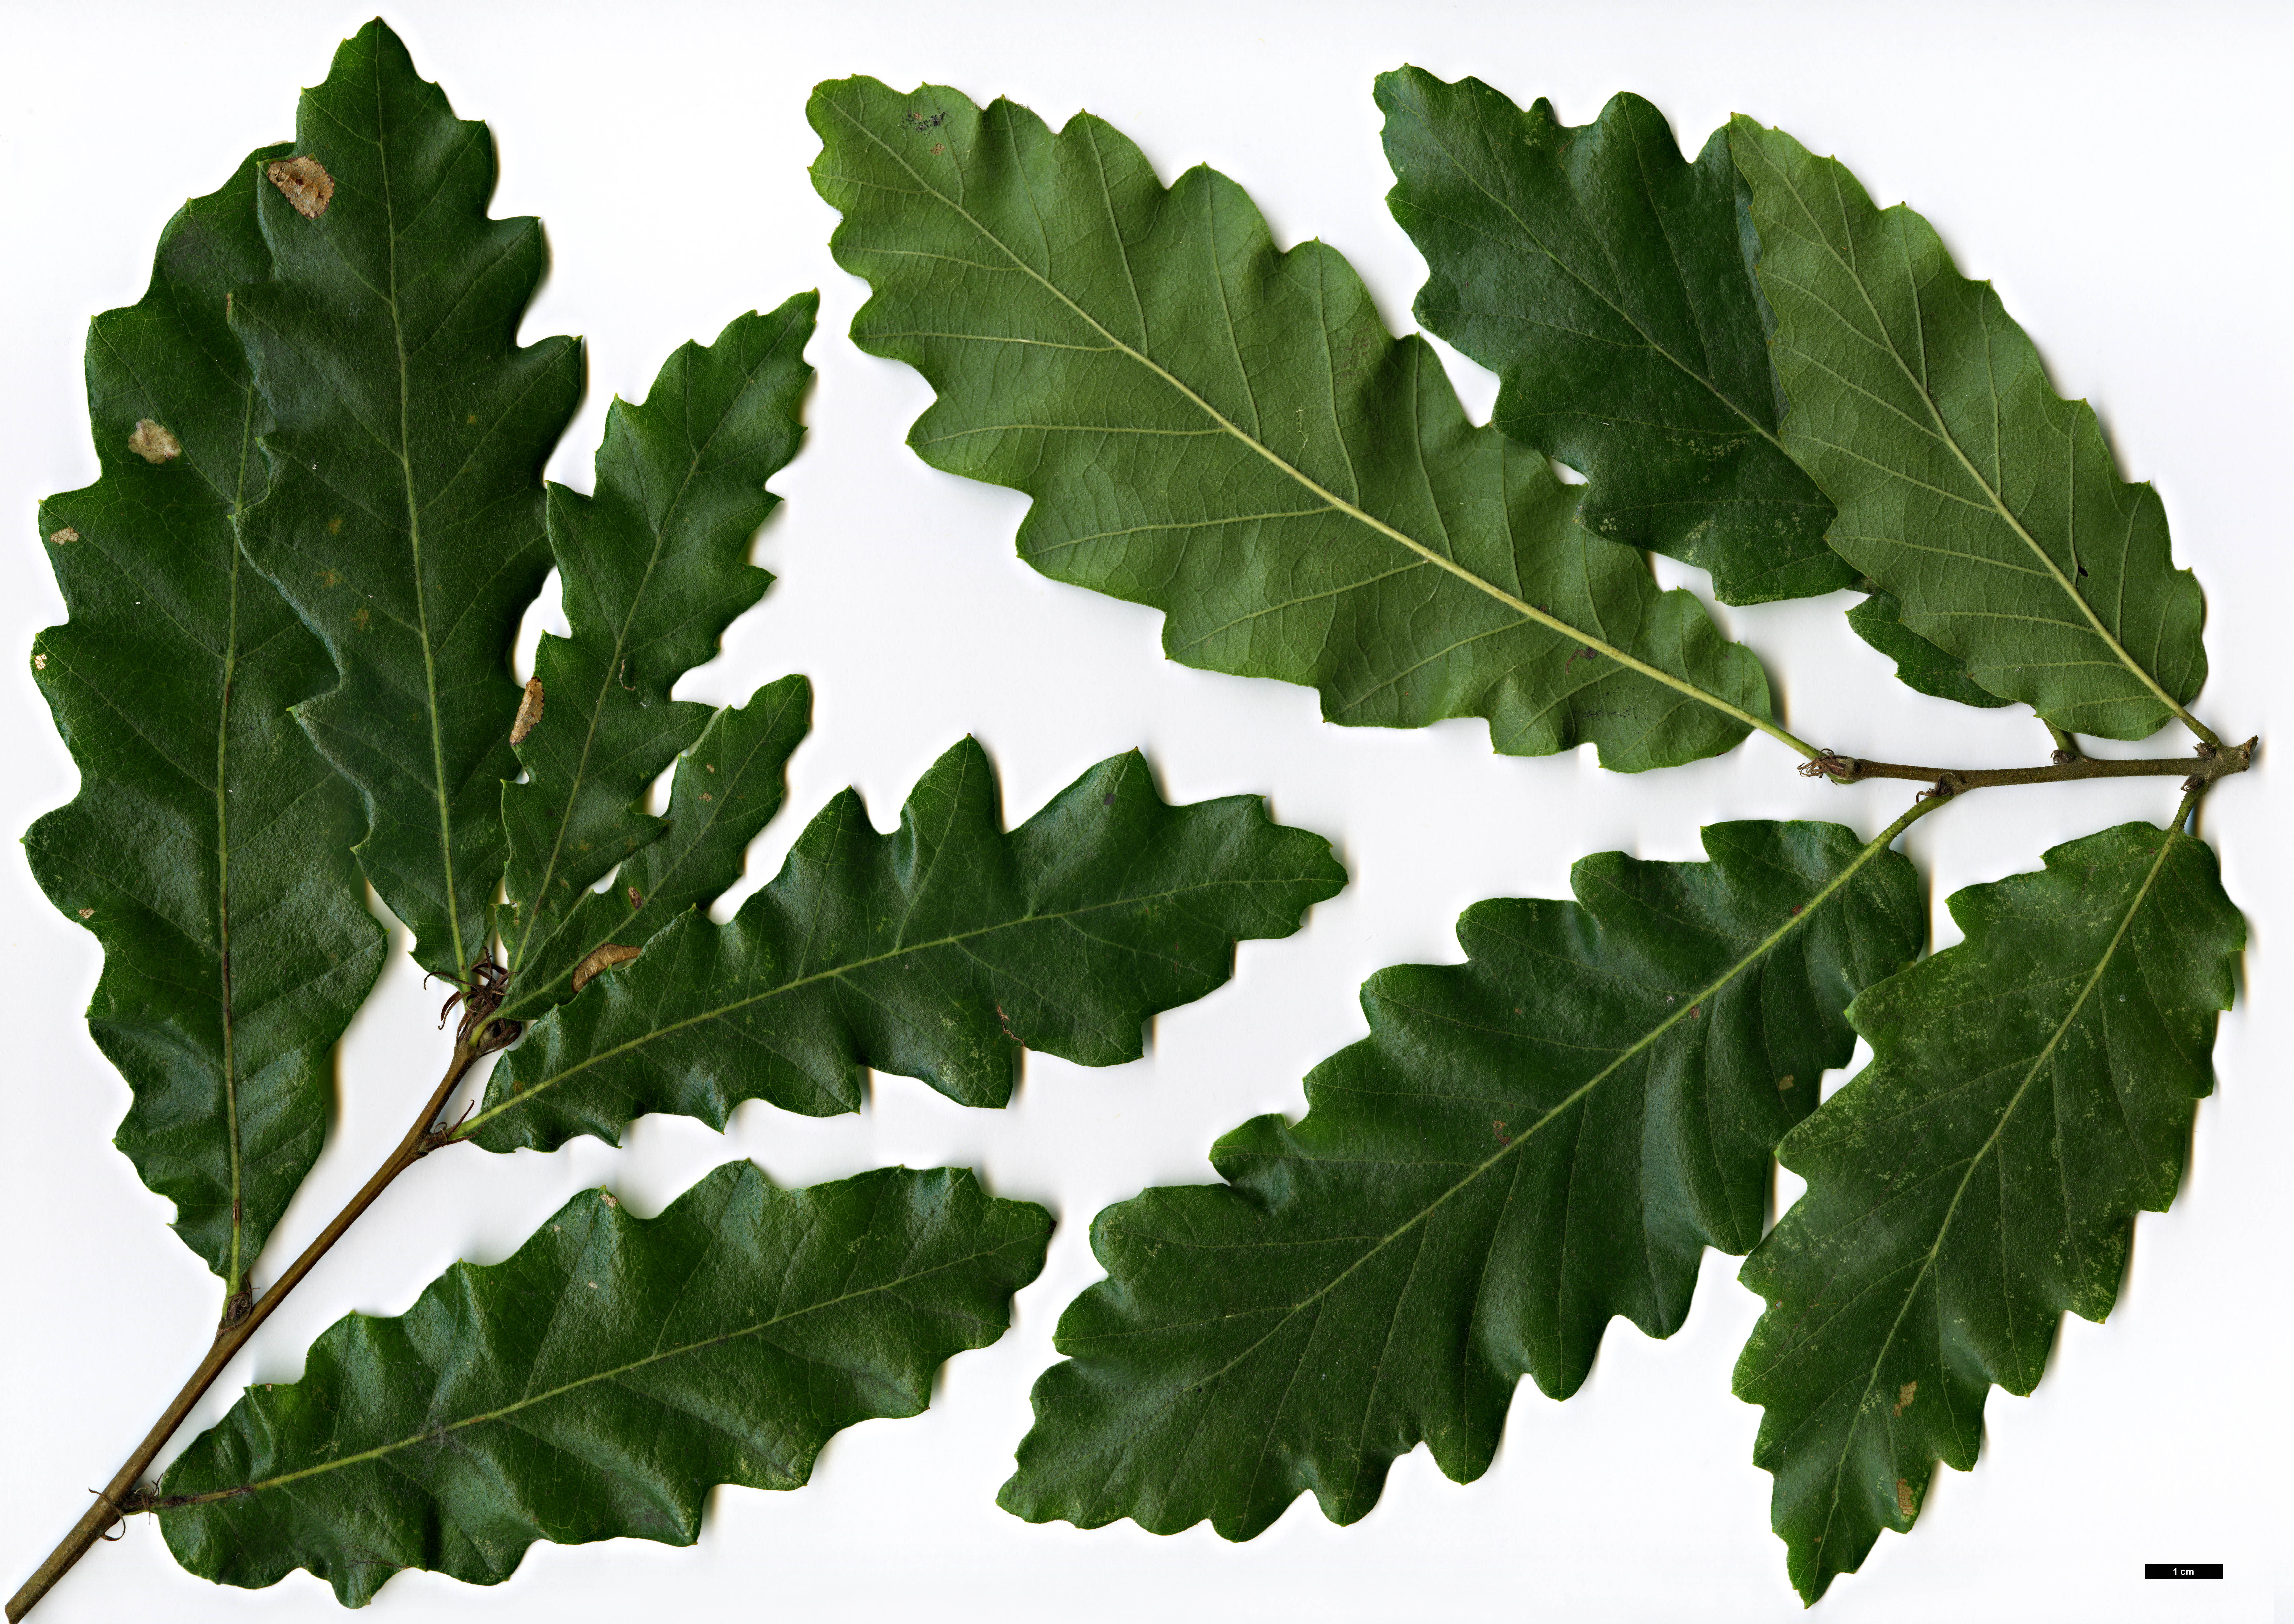 High resolution image: Family: Fagaceae - Genus: Quercus - Taxon: castaneifolia × Q.cerris